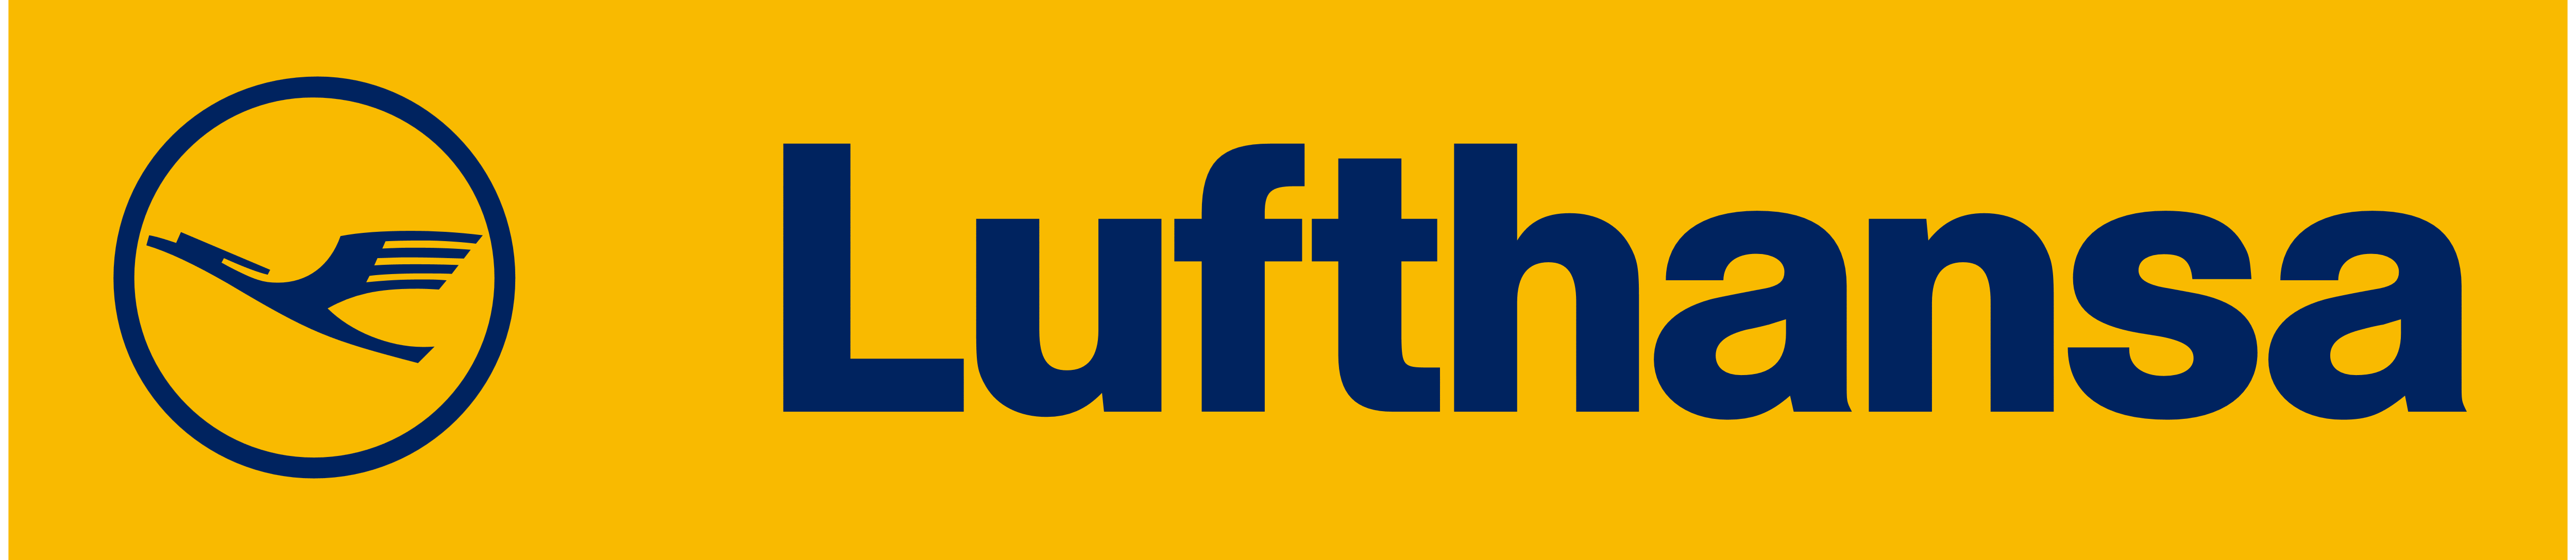 Lufthansa Logo PNG - 177940